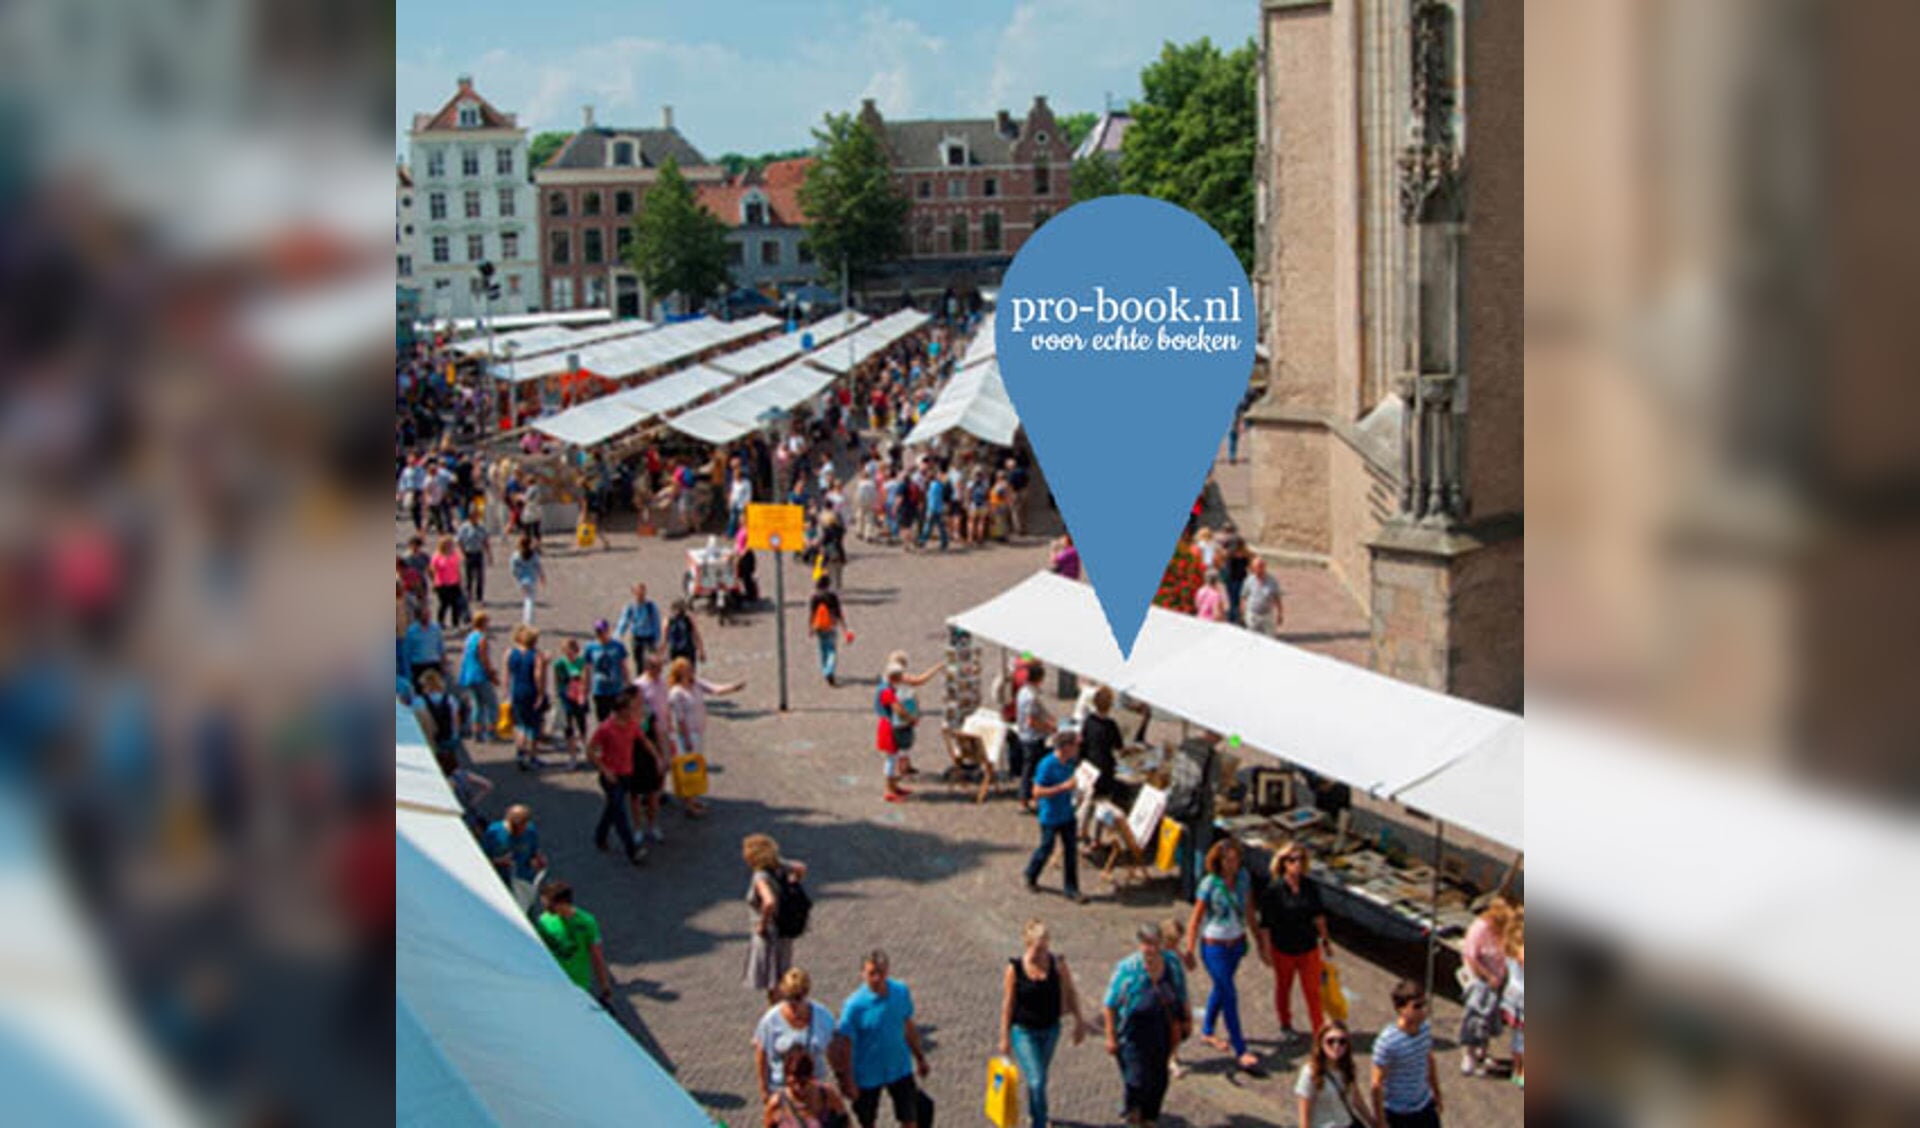 Zwolse boekenmakers naar Deventer Boekenmarkt